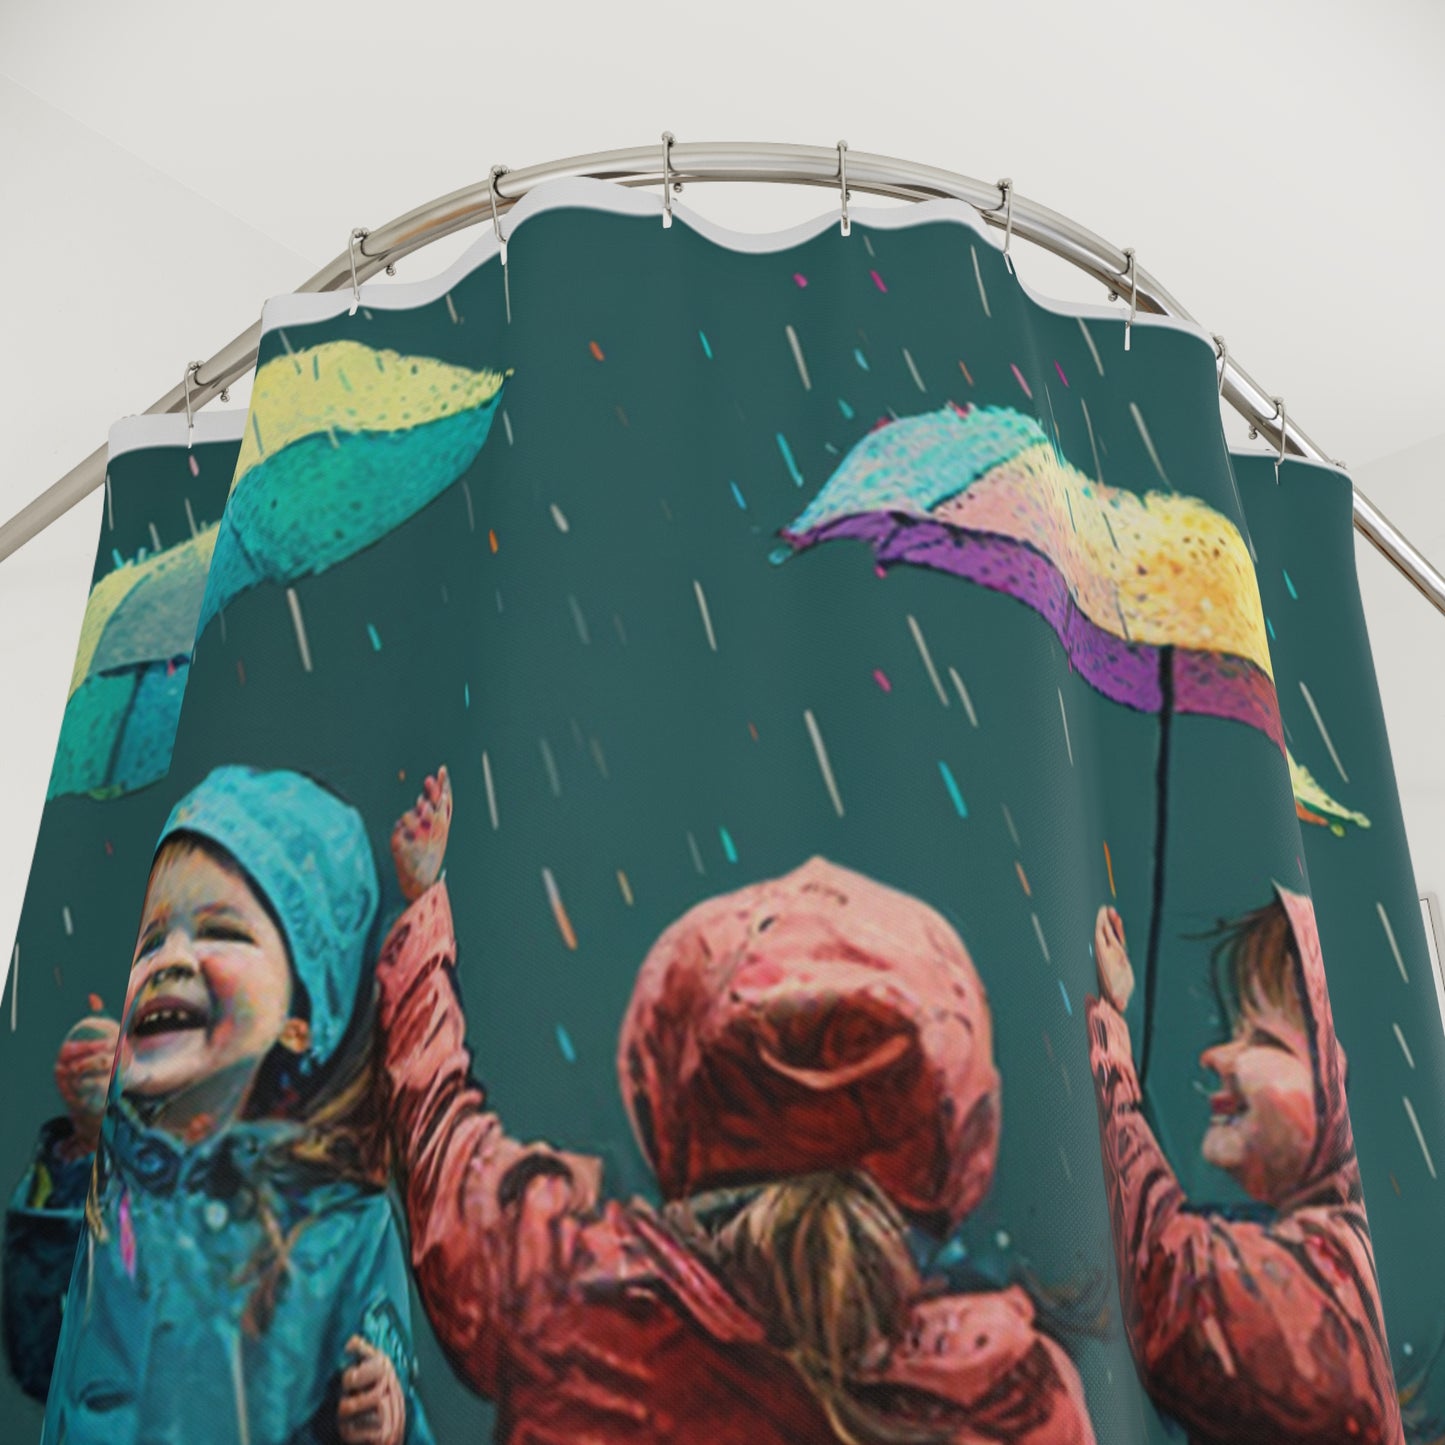 Polyester Shower Curtain kids dancing rain 1